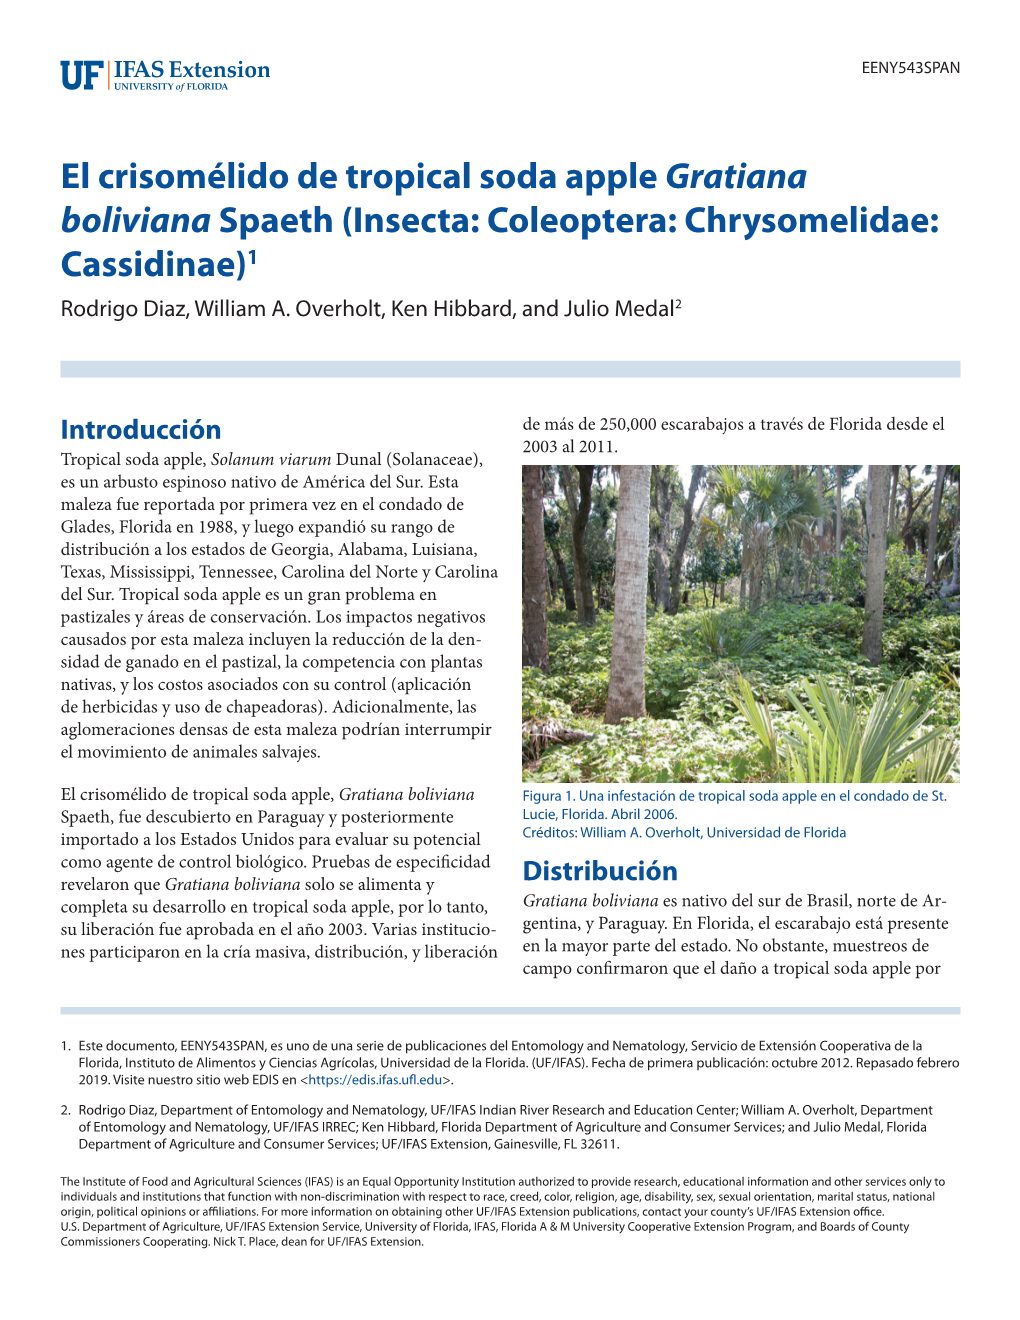 El Crisomélido De Tropical Soda Apple Gratiana Boliviana Spaeth (Insecta: Coleoptera: Chrysomelidae: Cassidinae)1 Rodrigo Diaz, William A